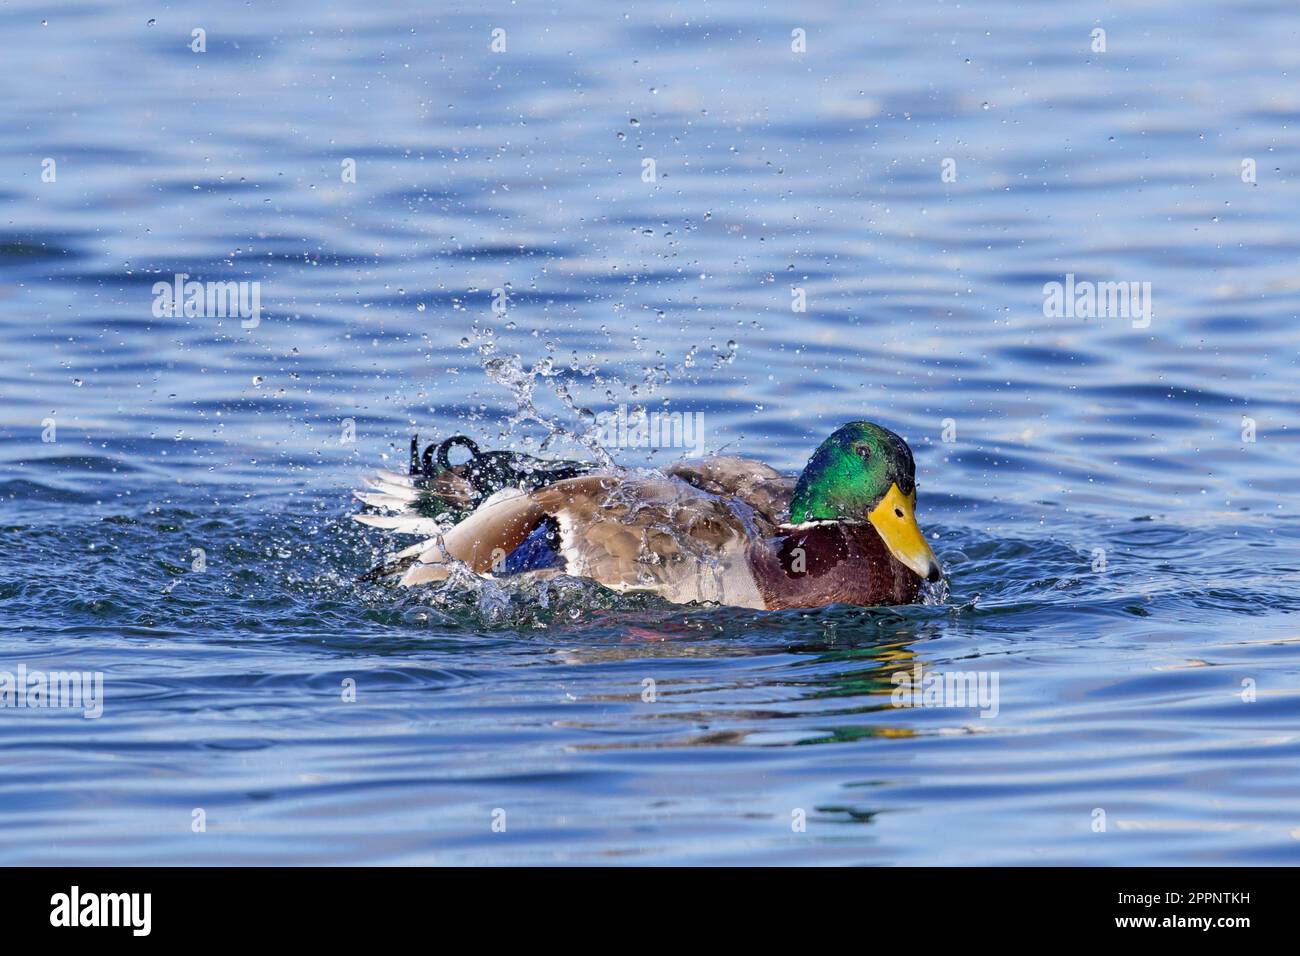 Mallard (Anas platyrhynchos) male duck / drake swimming and bathing by splashing water in pond / lake Stock Photo